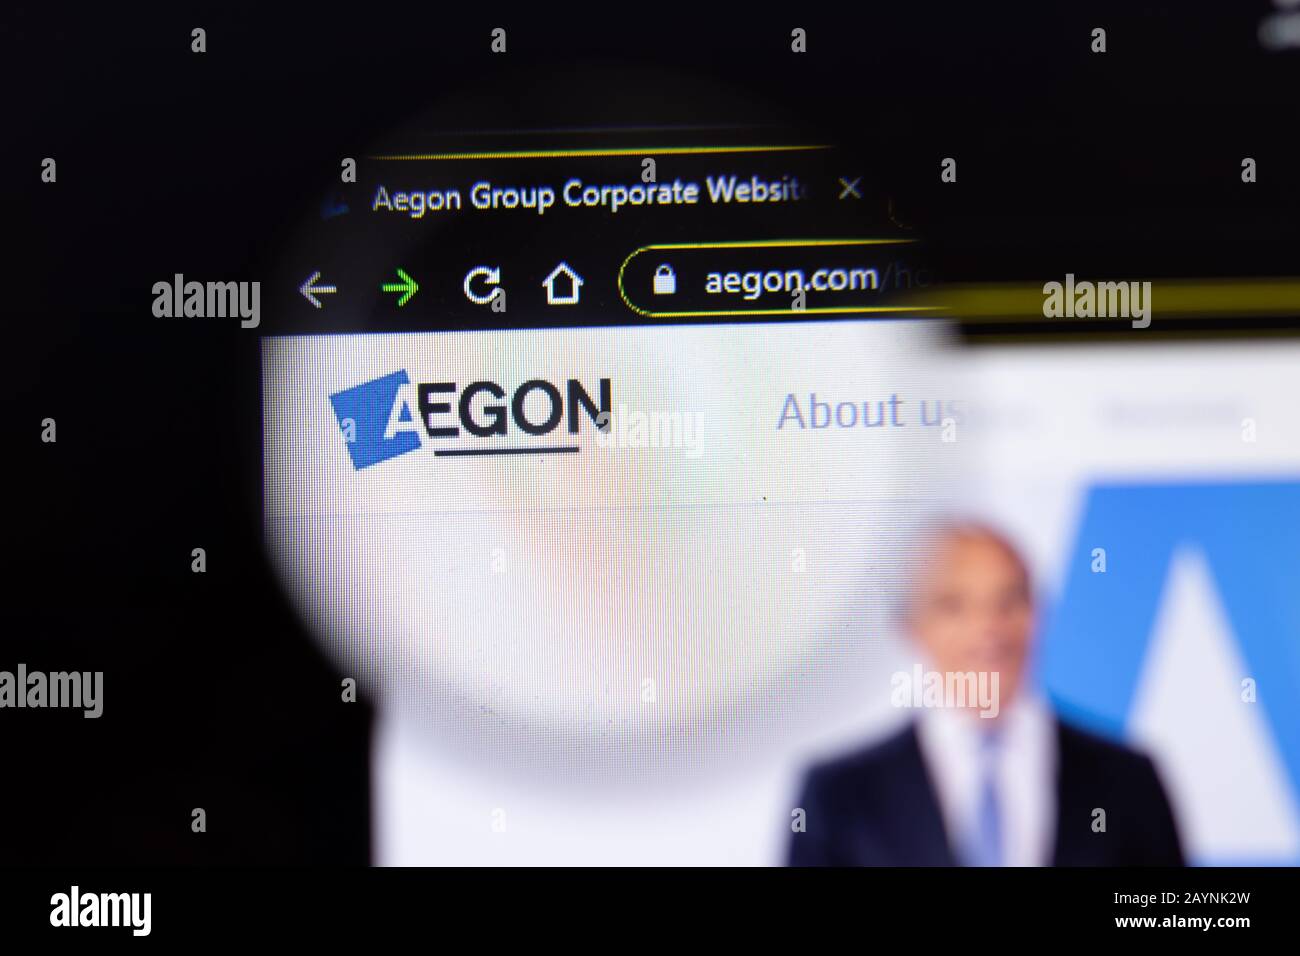 Saint-Petersburg, Russie - 18 février 2020: AEGON Company site web logo sur l'écran d'ordinateur portable. Écran avec icône, éditorial illustratif Banque D'Images